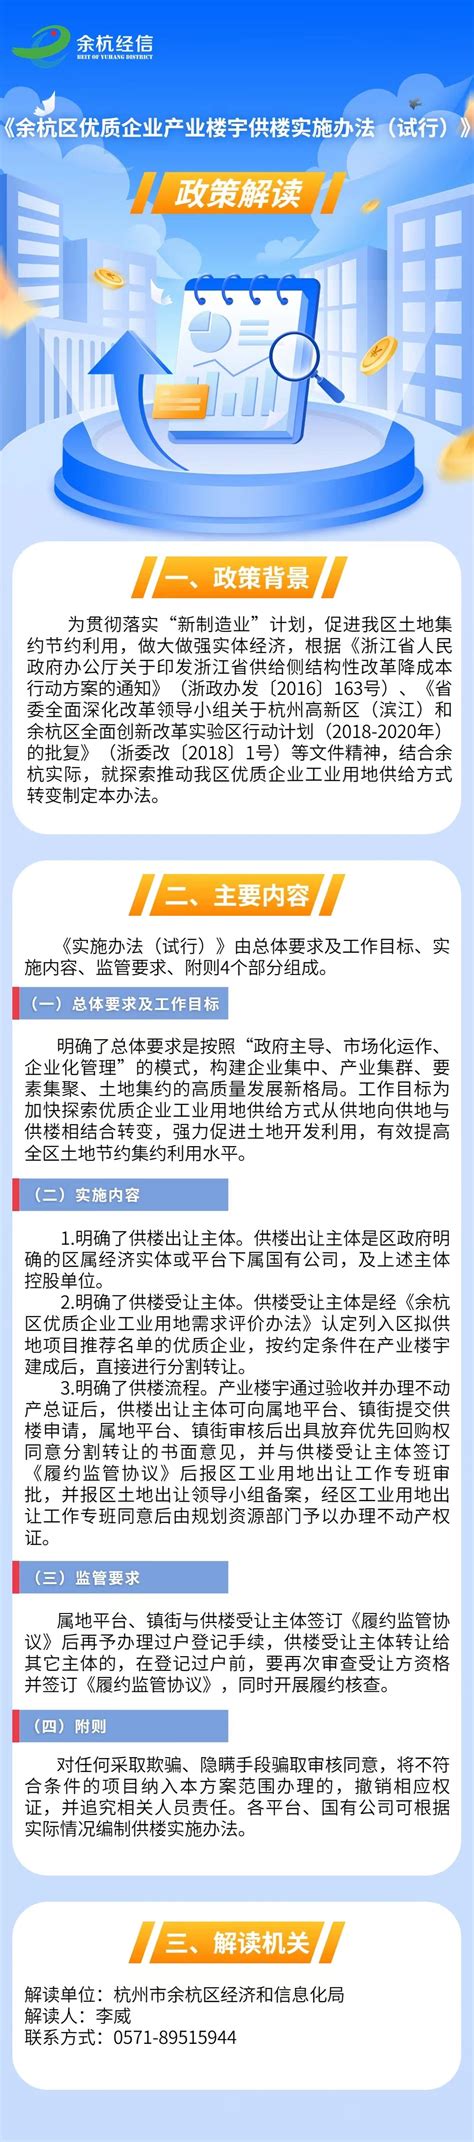 杭州市拱墅区人民政府 条例图解